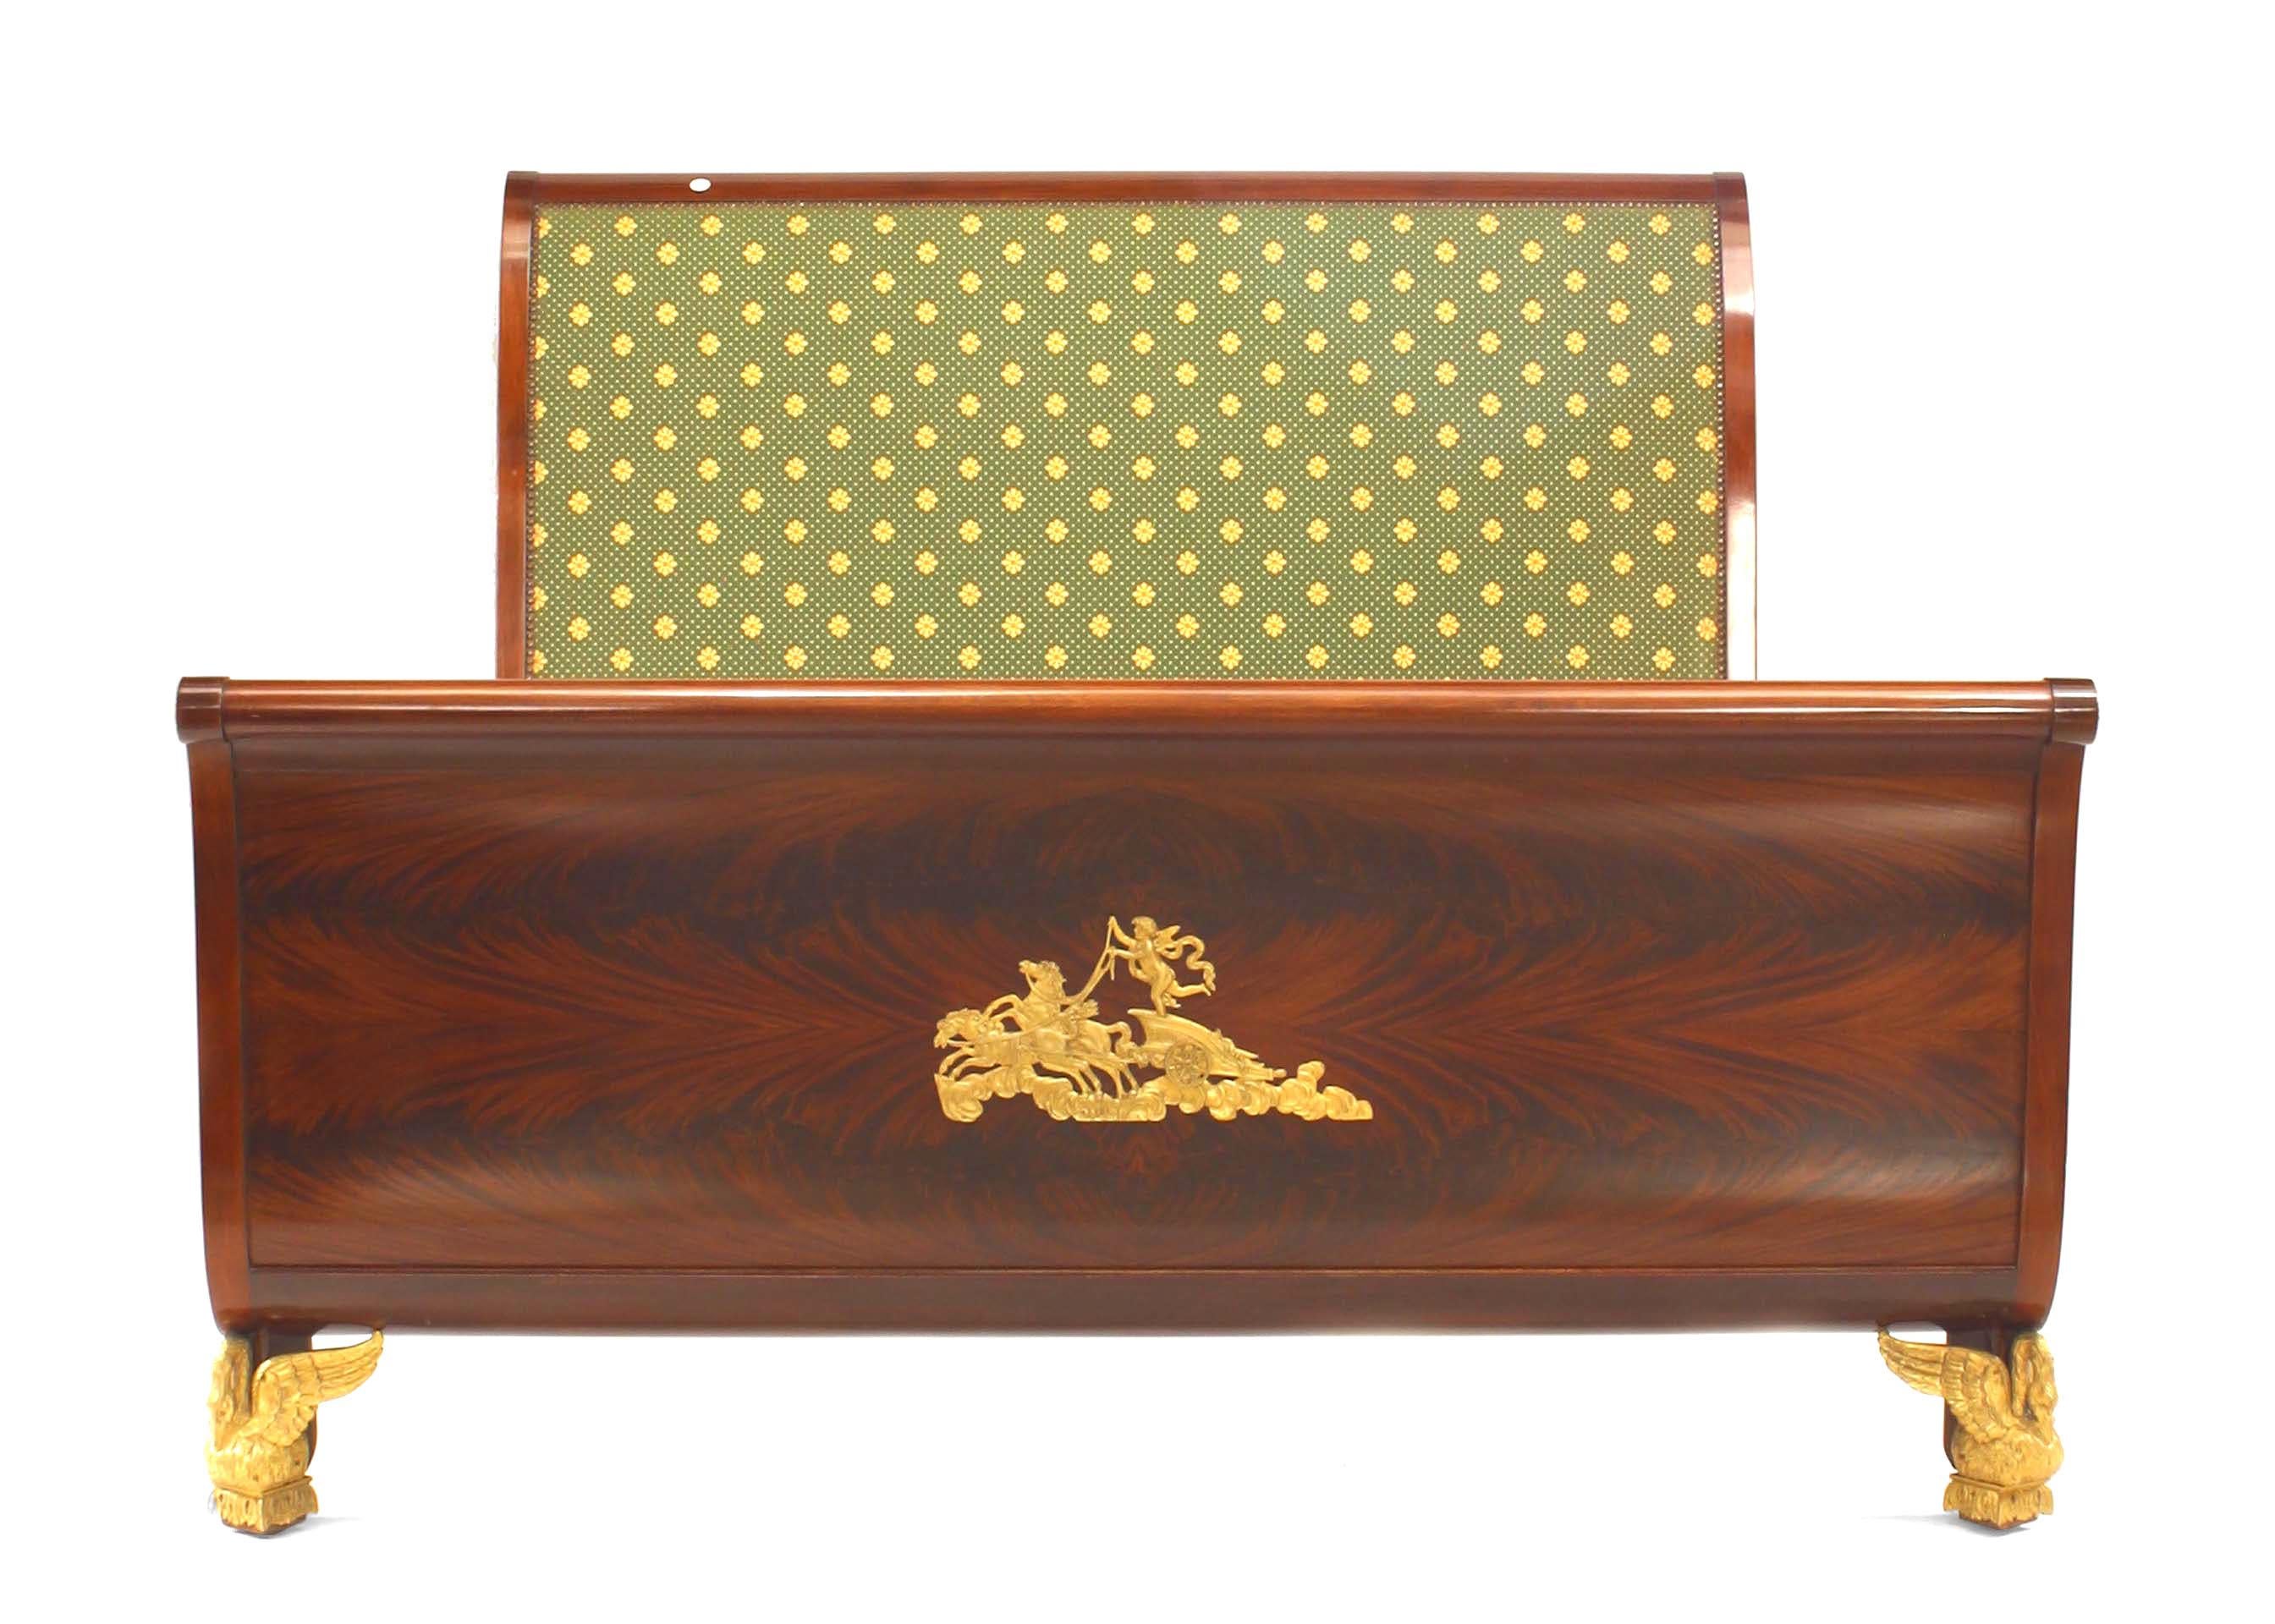 Lit queen size de style Empire français (19/20ème siècle) en acajou avec garniture en bronze doré et panneau tapissé sur la tête de lit (comprend : tête de lit, pied de lit, rails).
